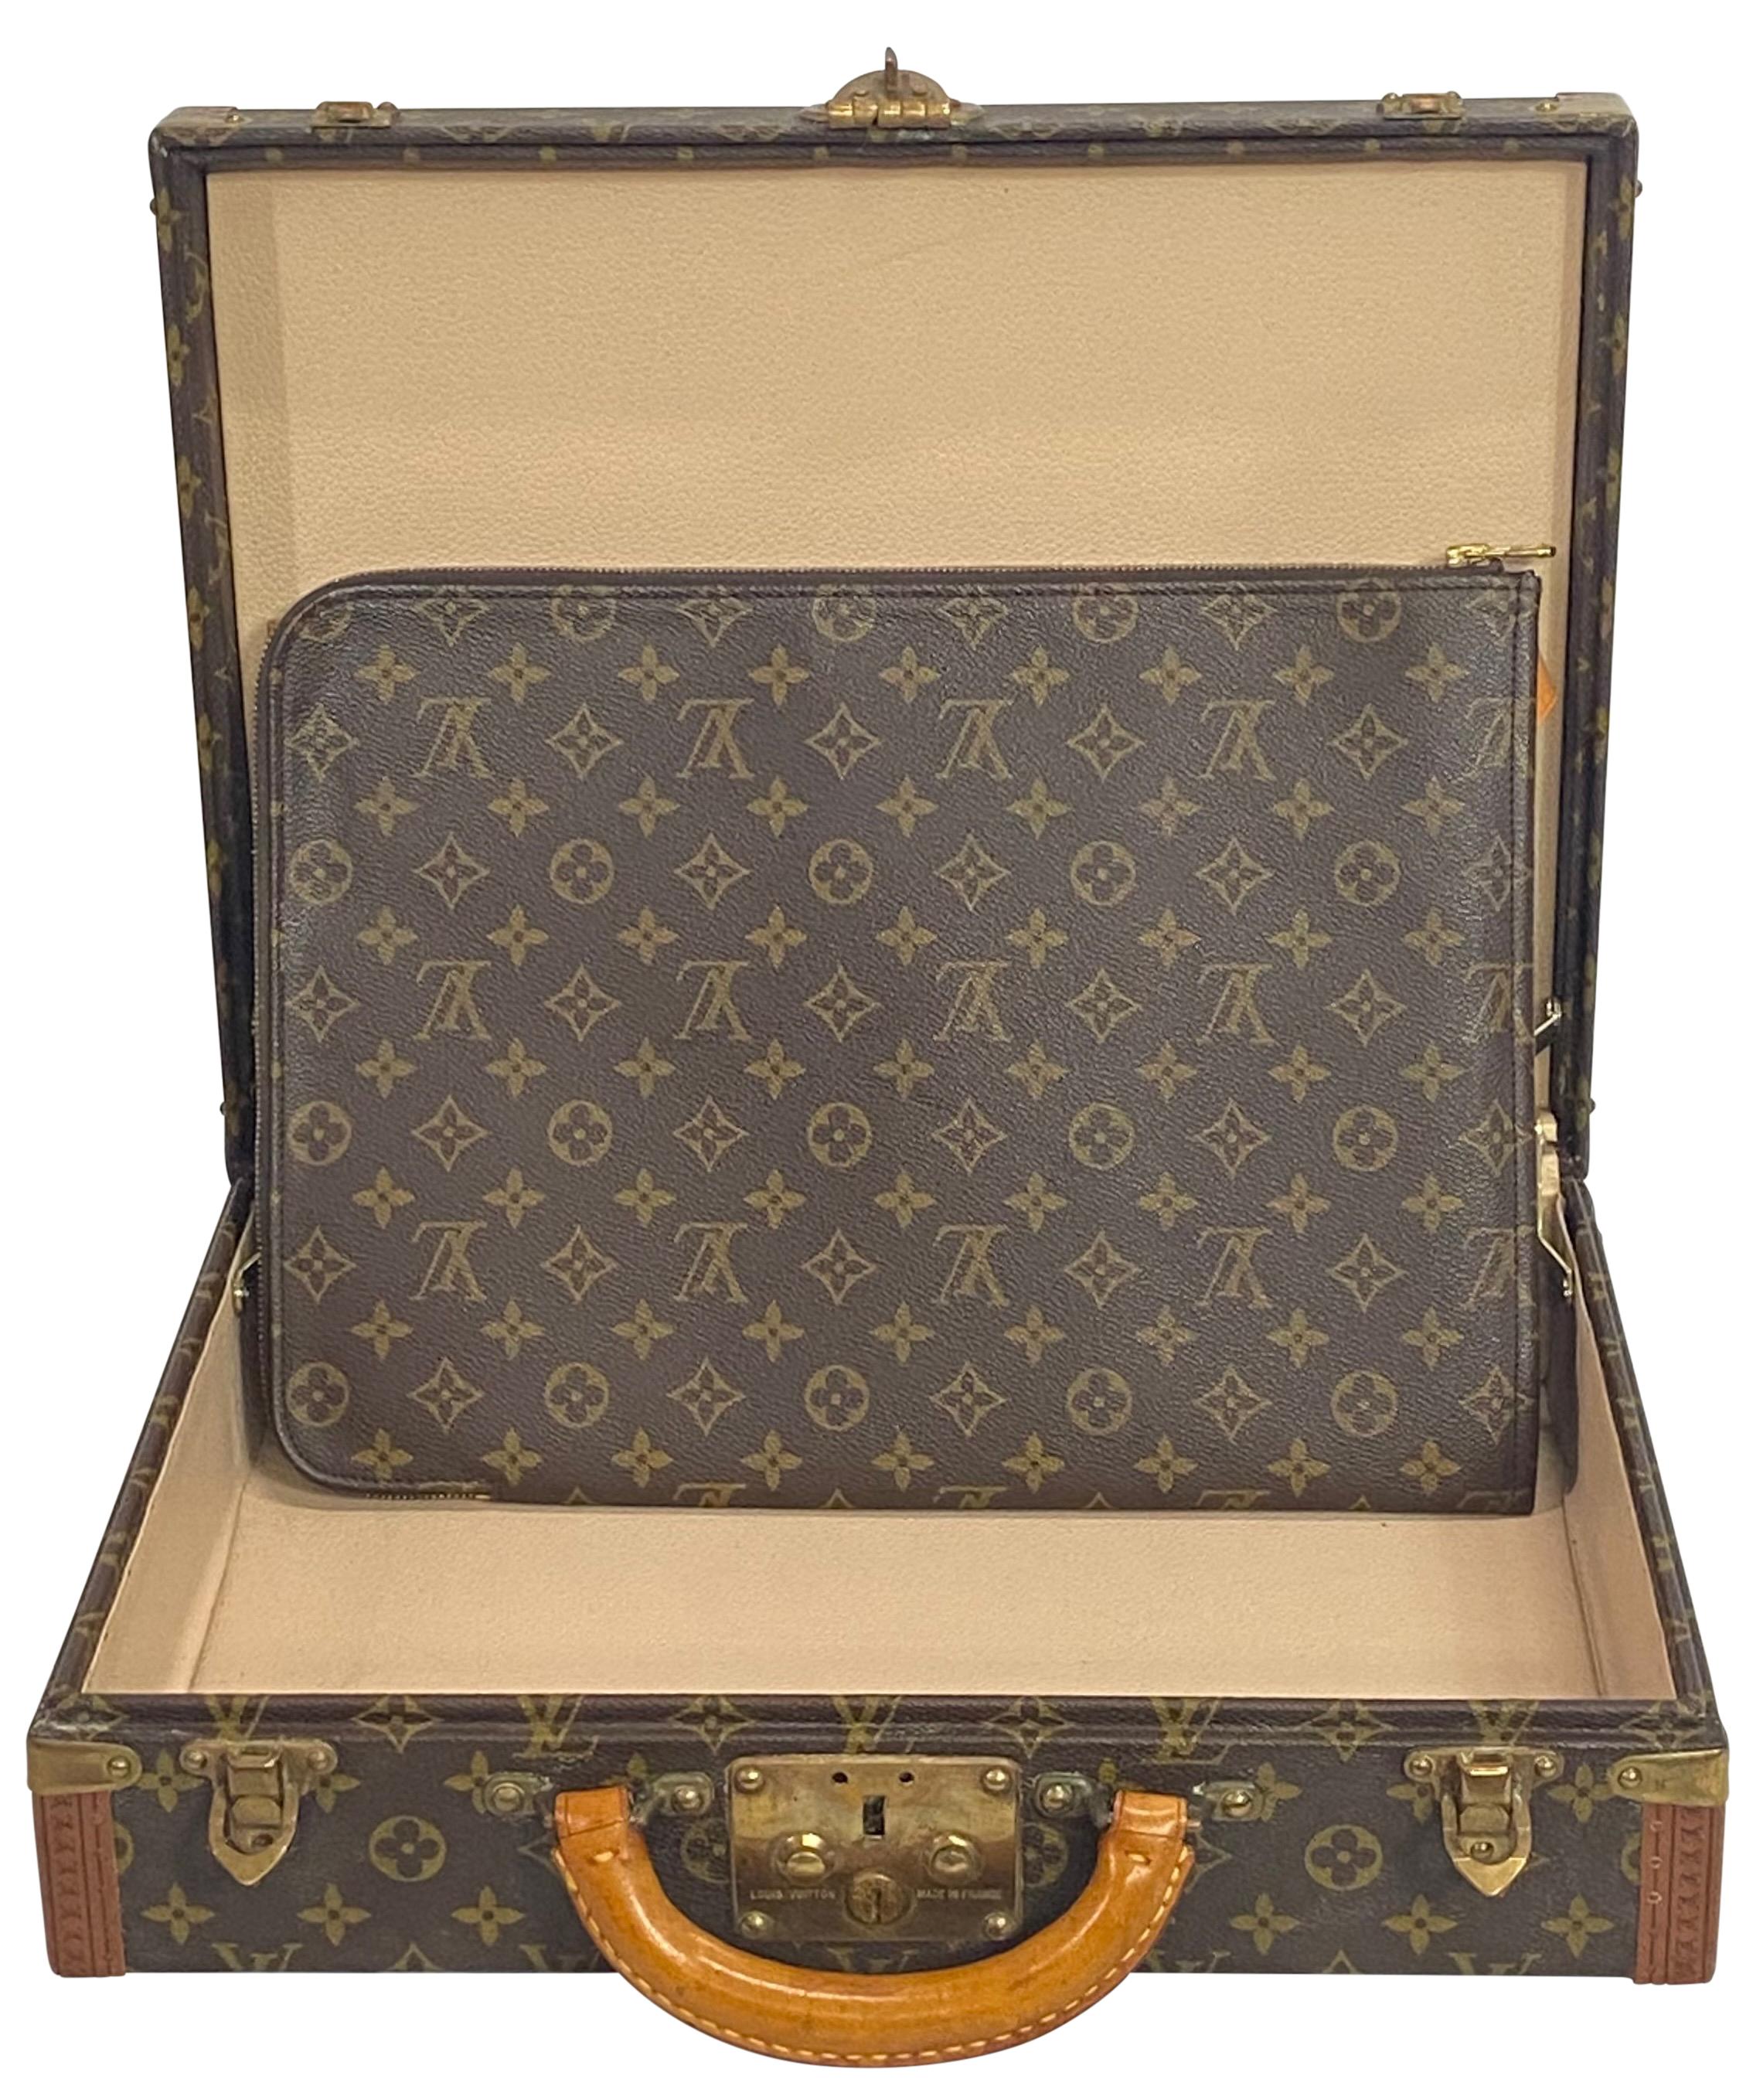 Authentic Vintage Louis Vuitton Suitcase Valise 3